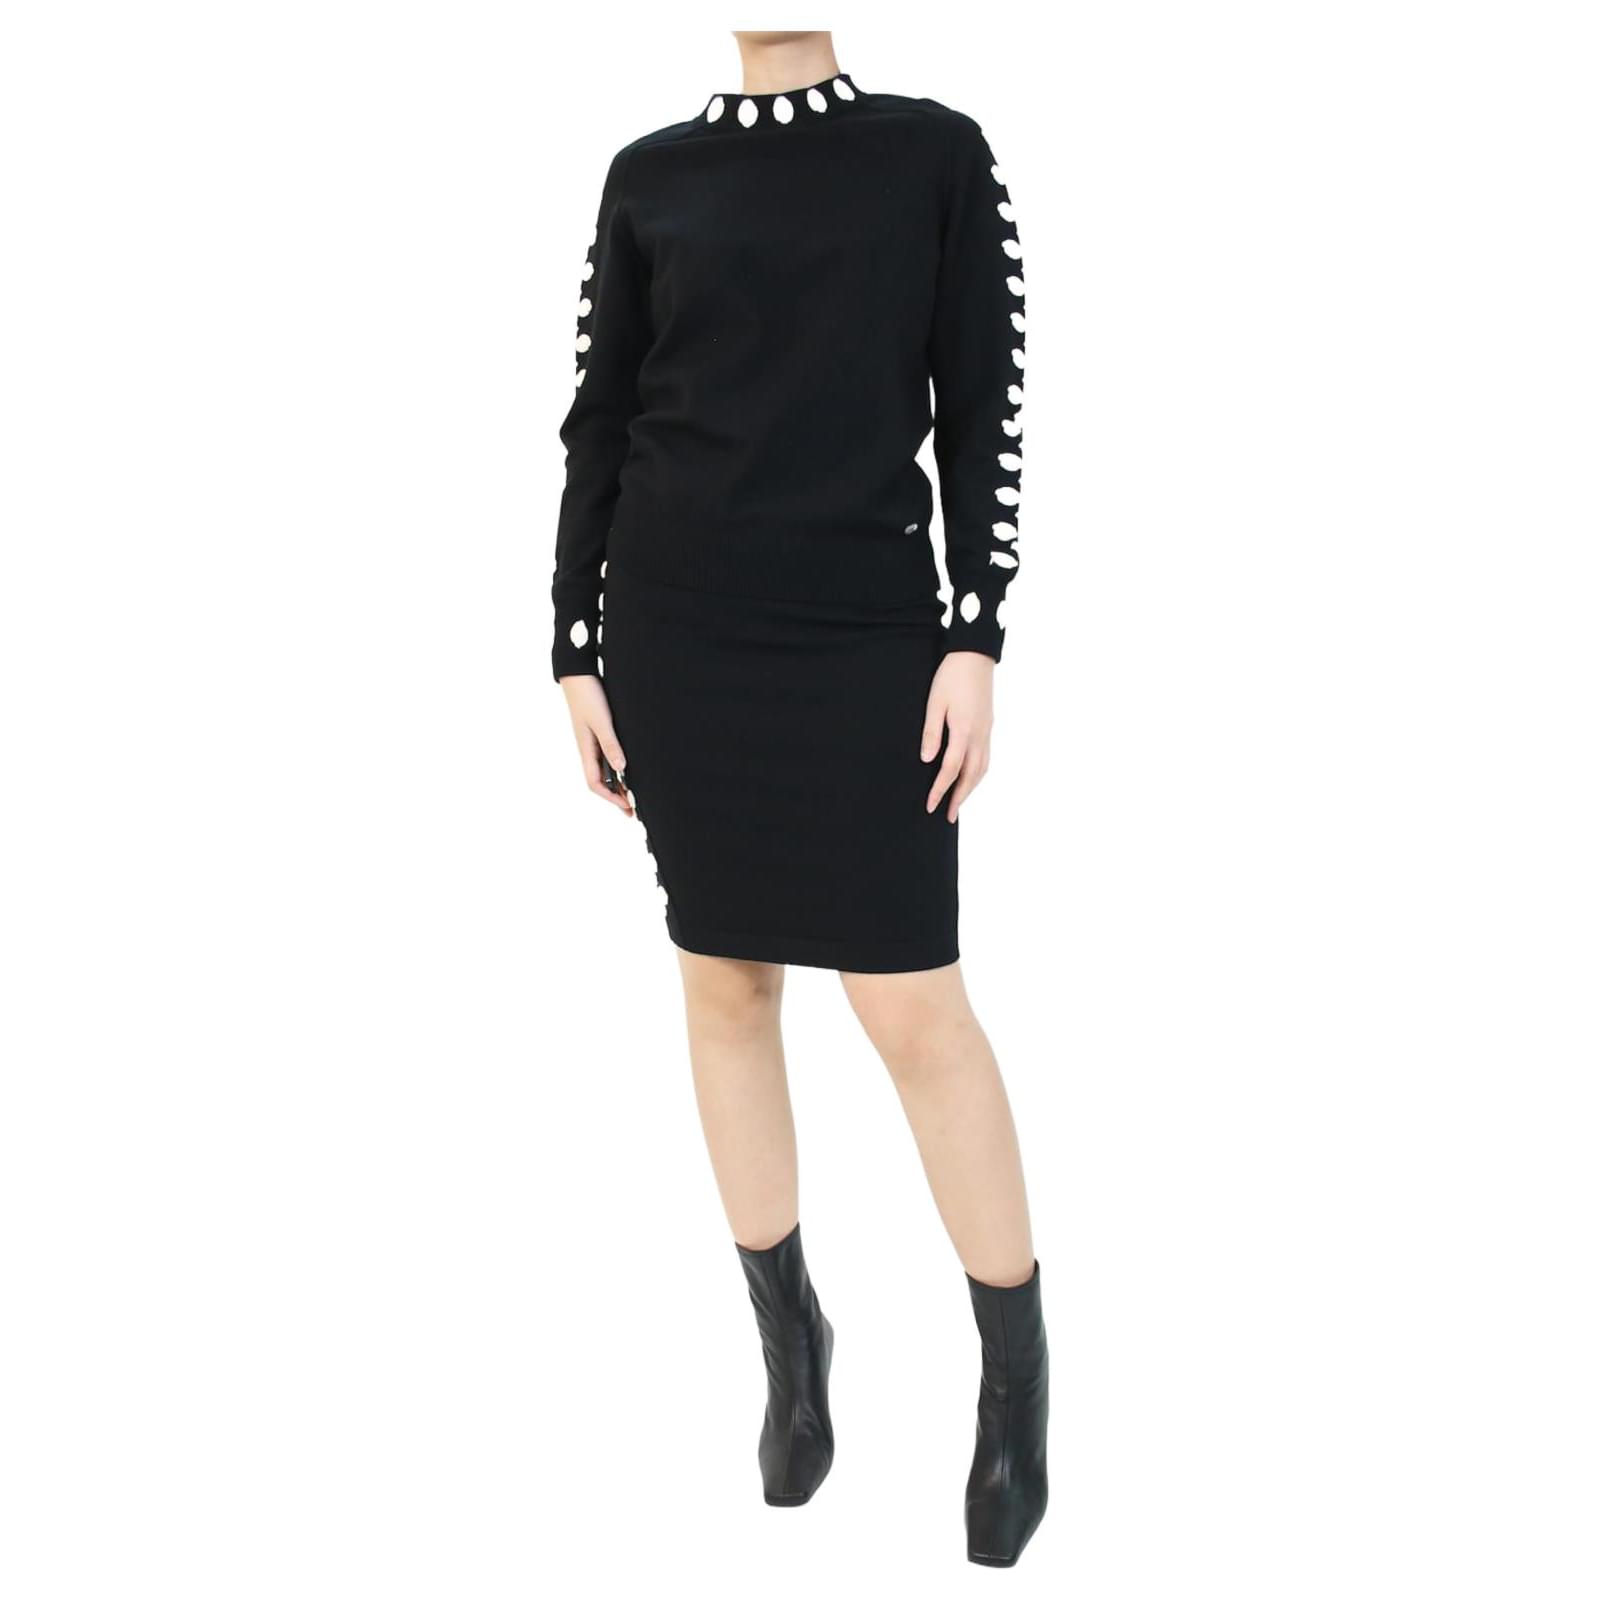 Tops Chanel Black Floral Embellished Top and Skirt Set - Size FR 36